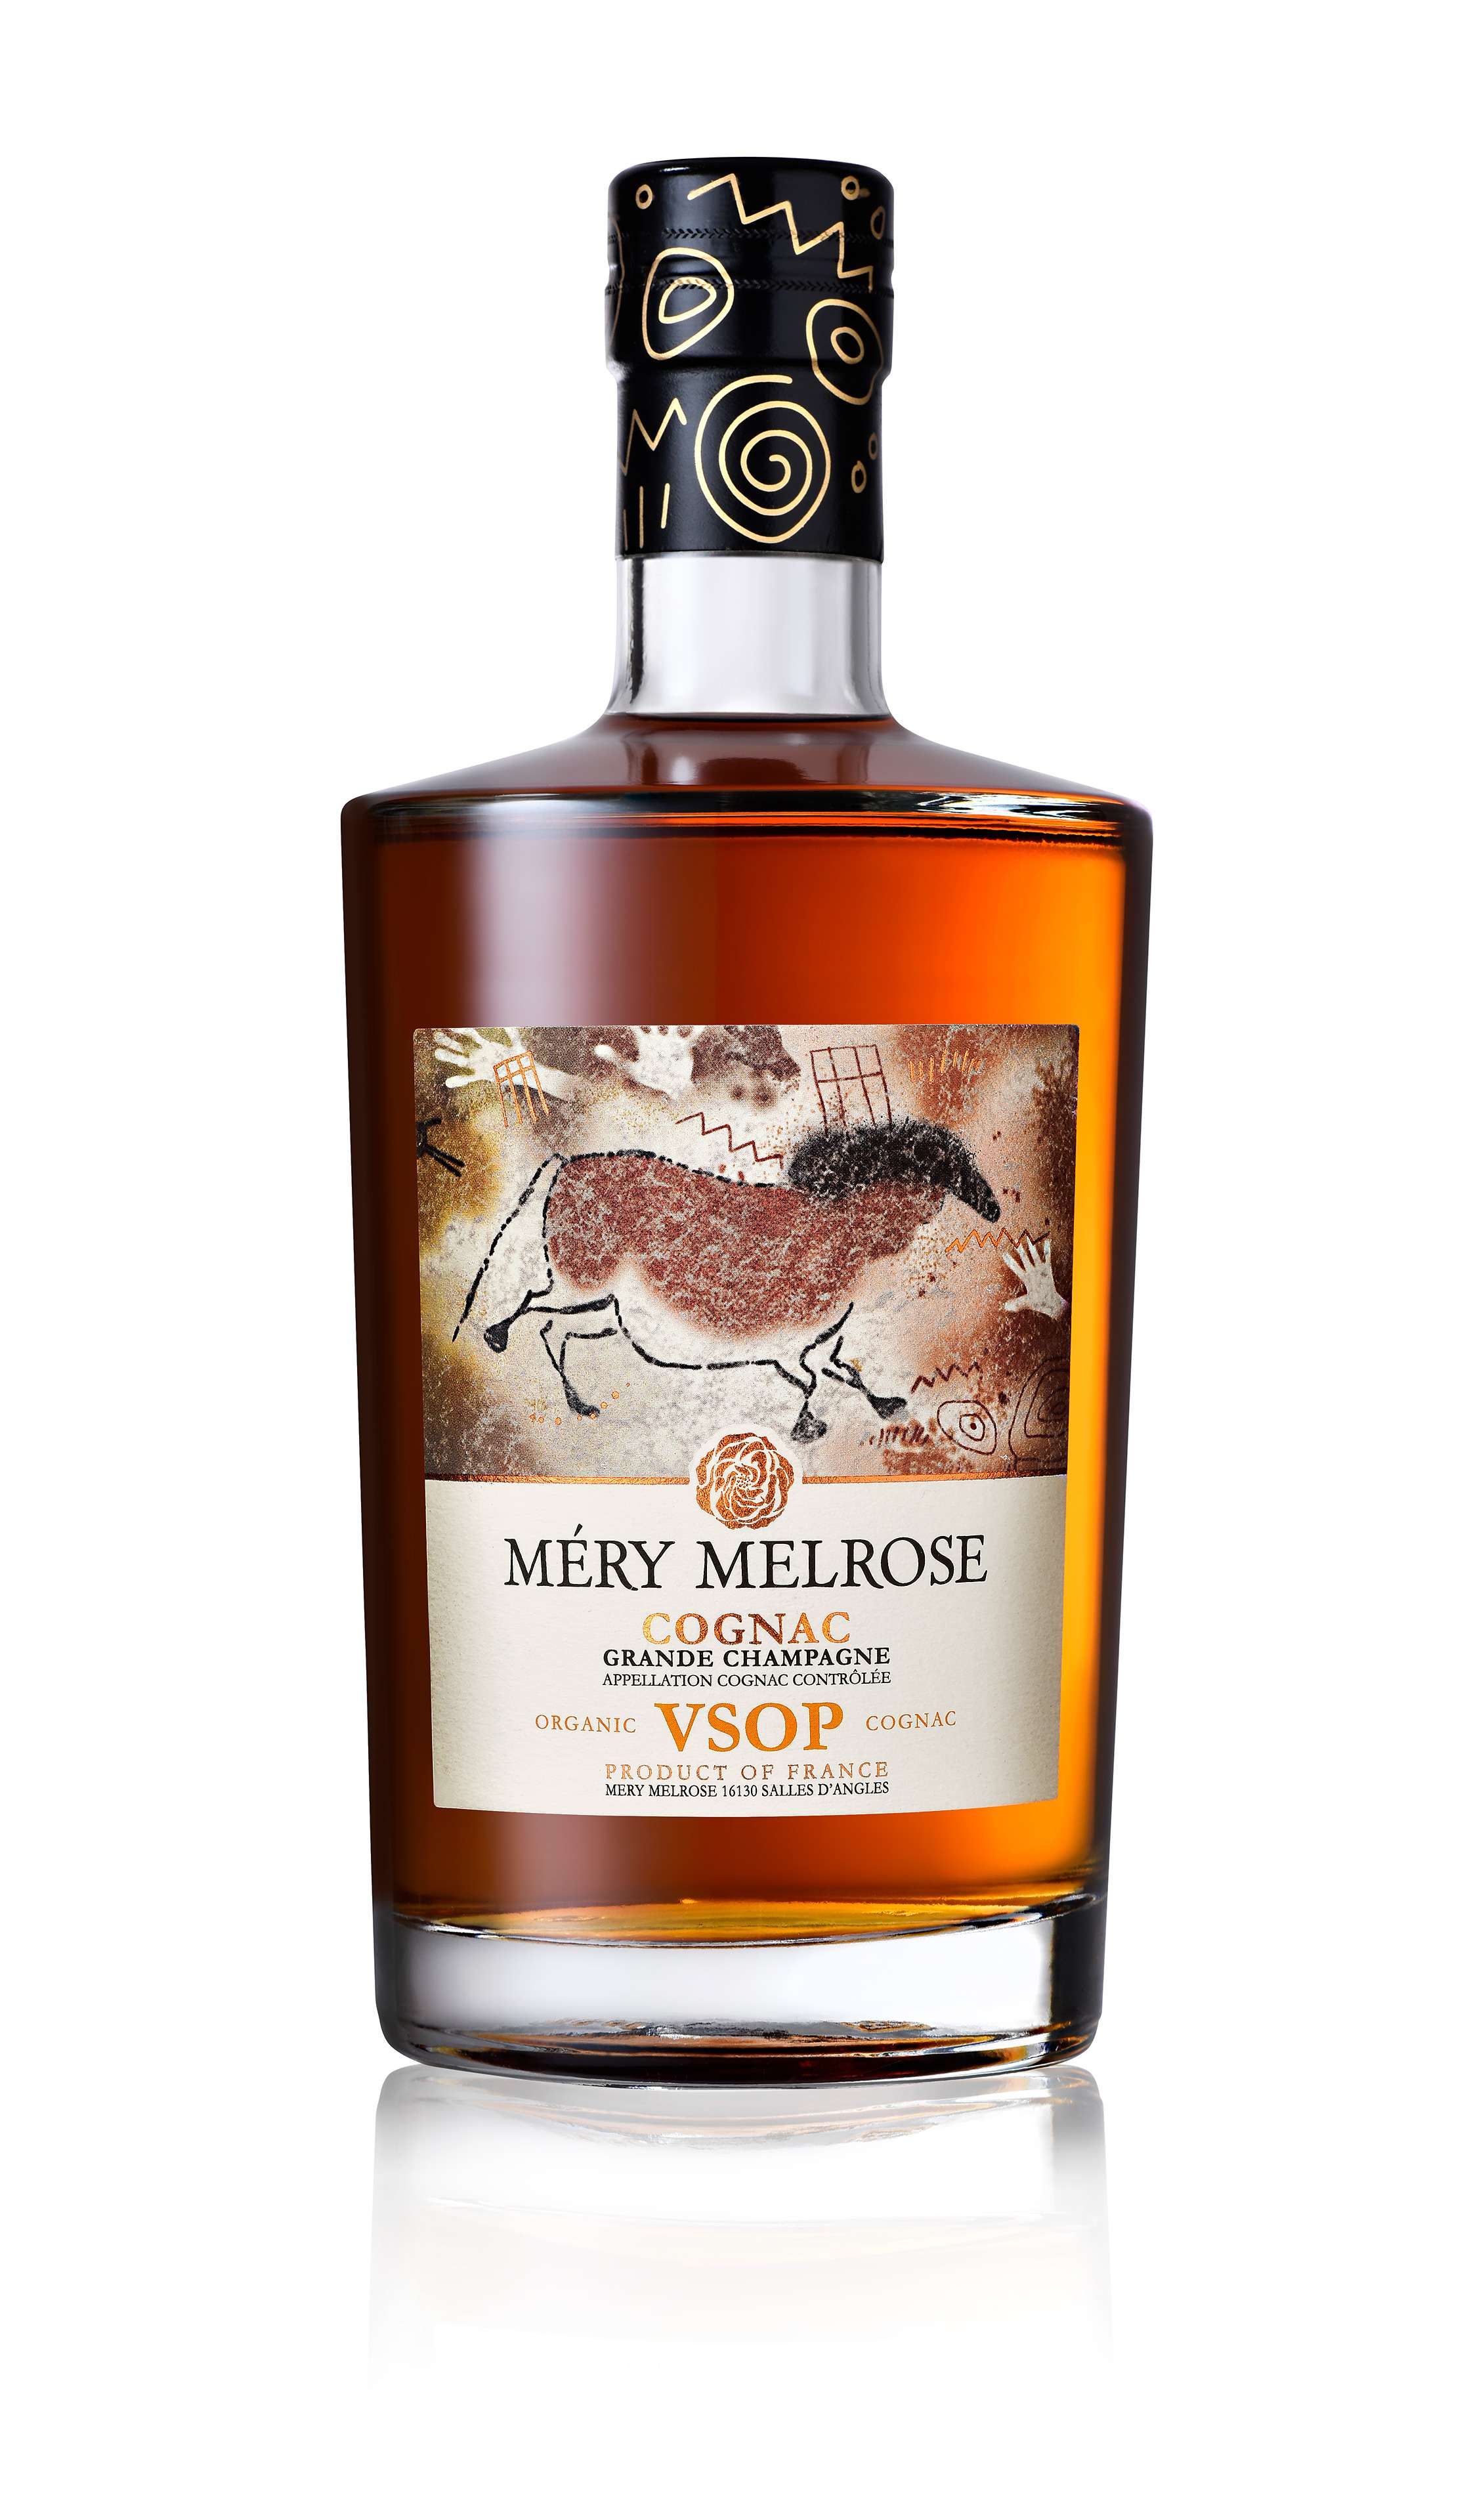 Mery Melrose Cognac VSOP